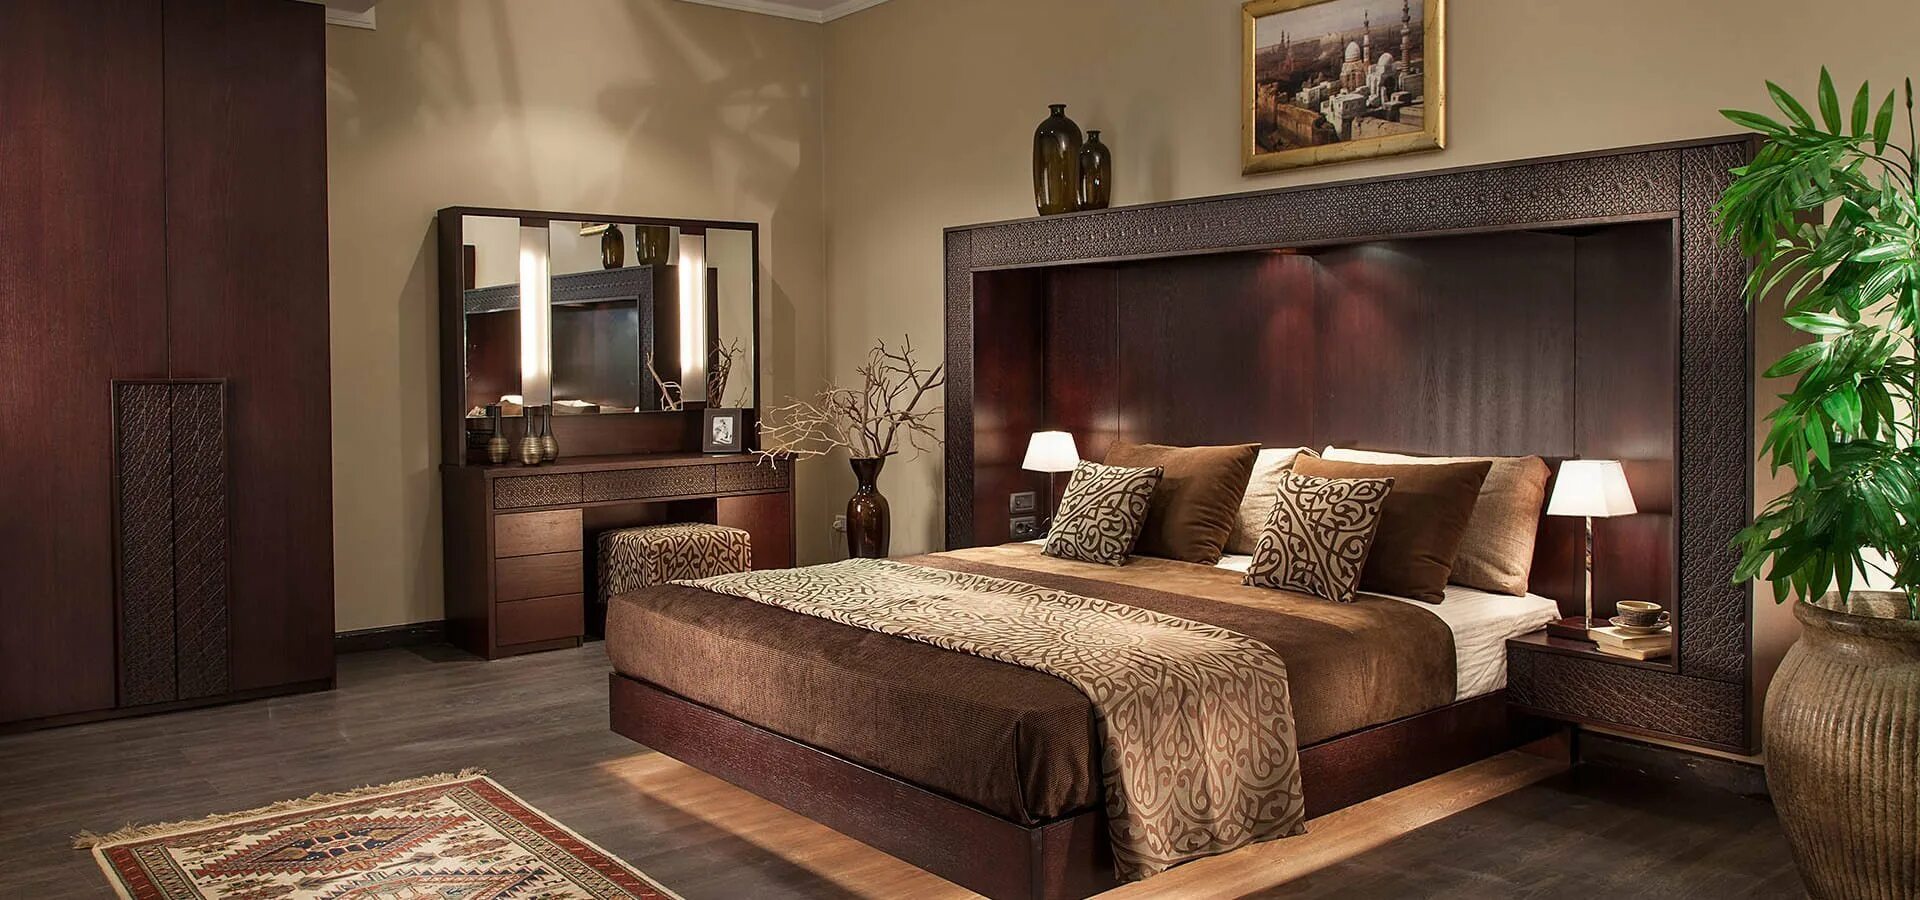 Комната коричневая мебель. Спальня. Спальня в коричневом цвете. Шоколадная спальня. Спальня в коричневых тонах.